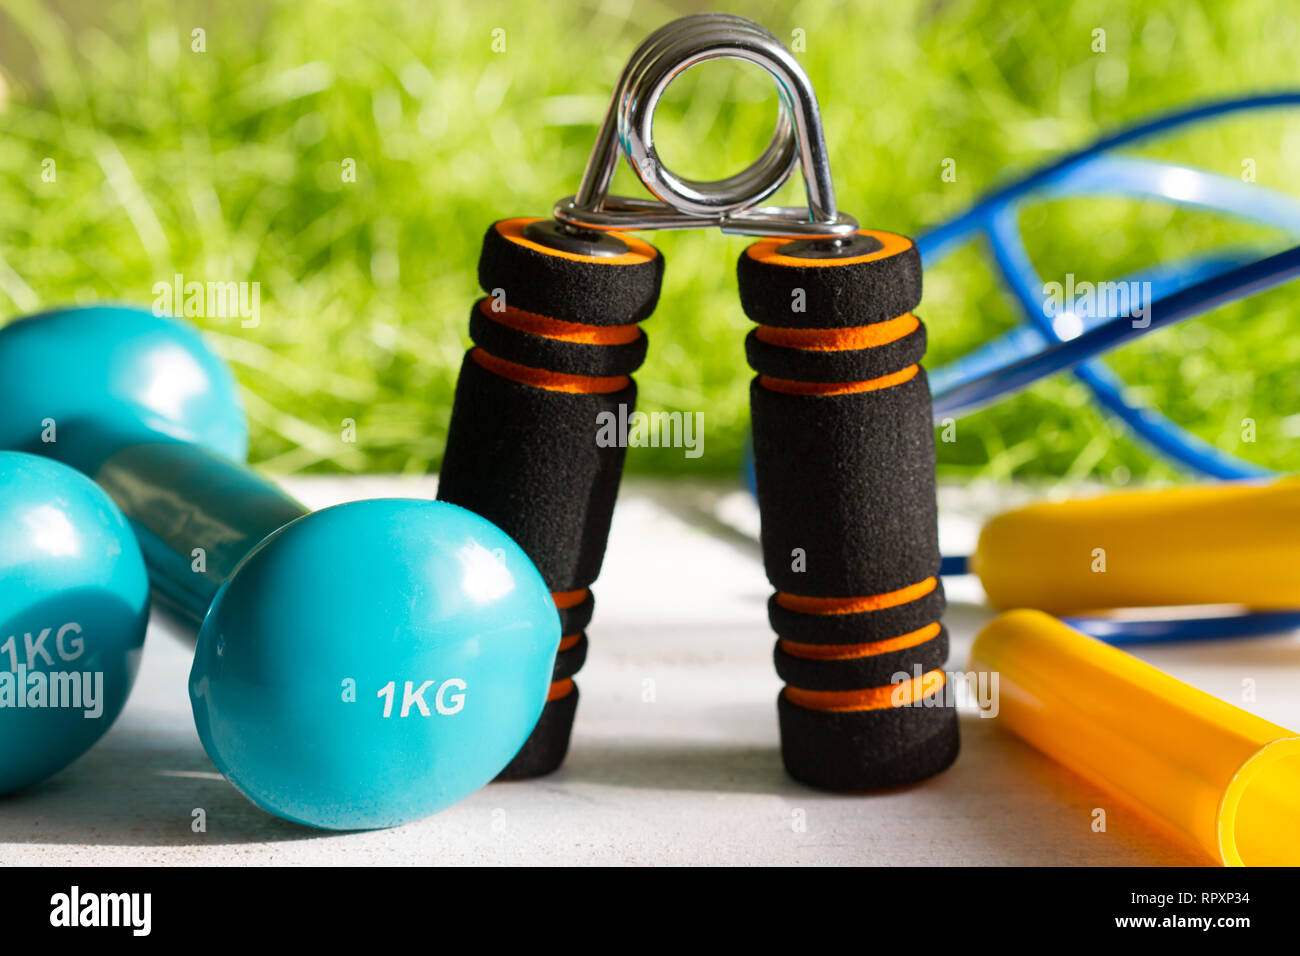 Dieta sport attivo e uno stile di vita sano concetto di primavera all'aperto con attrezzature per esercizi Foto Stock